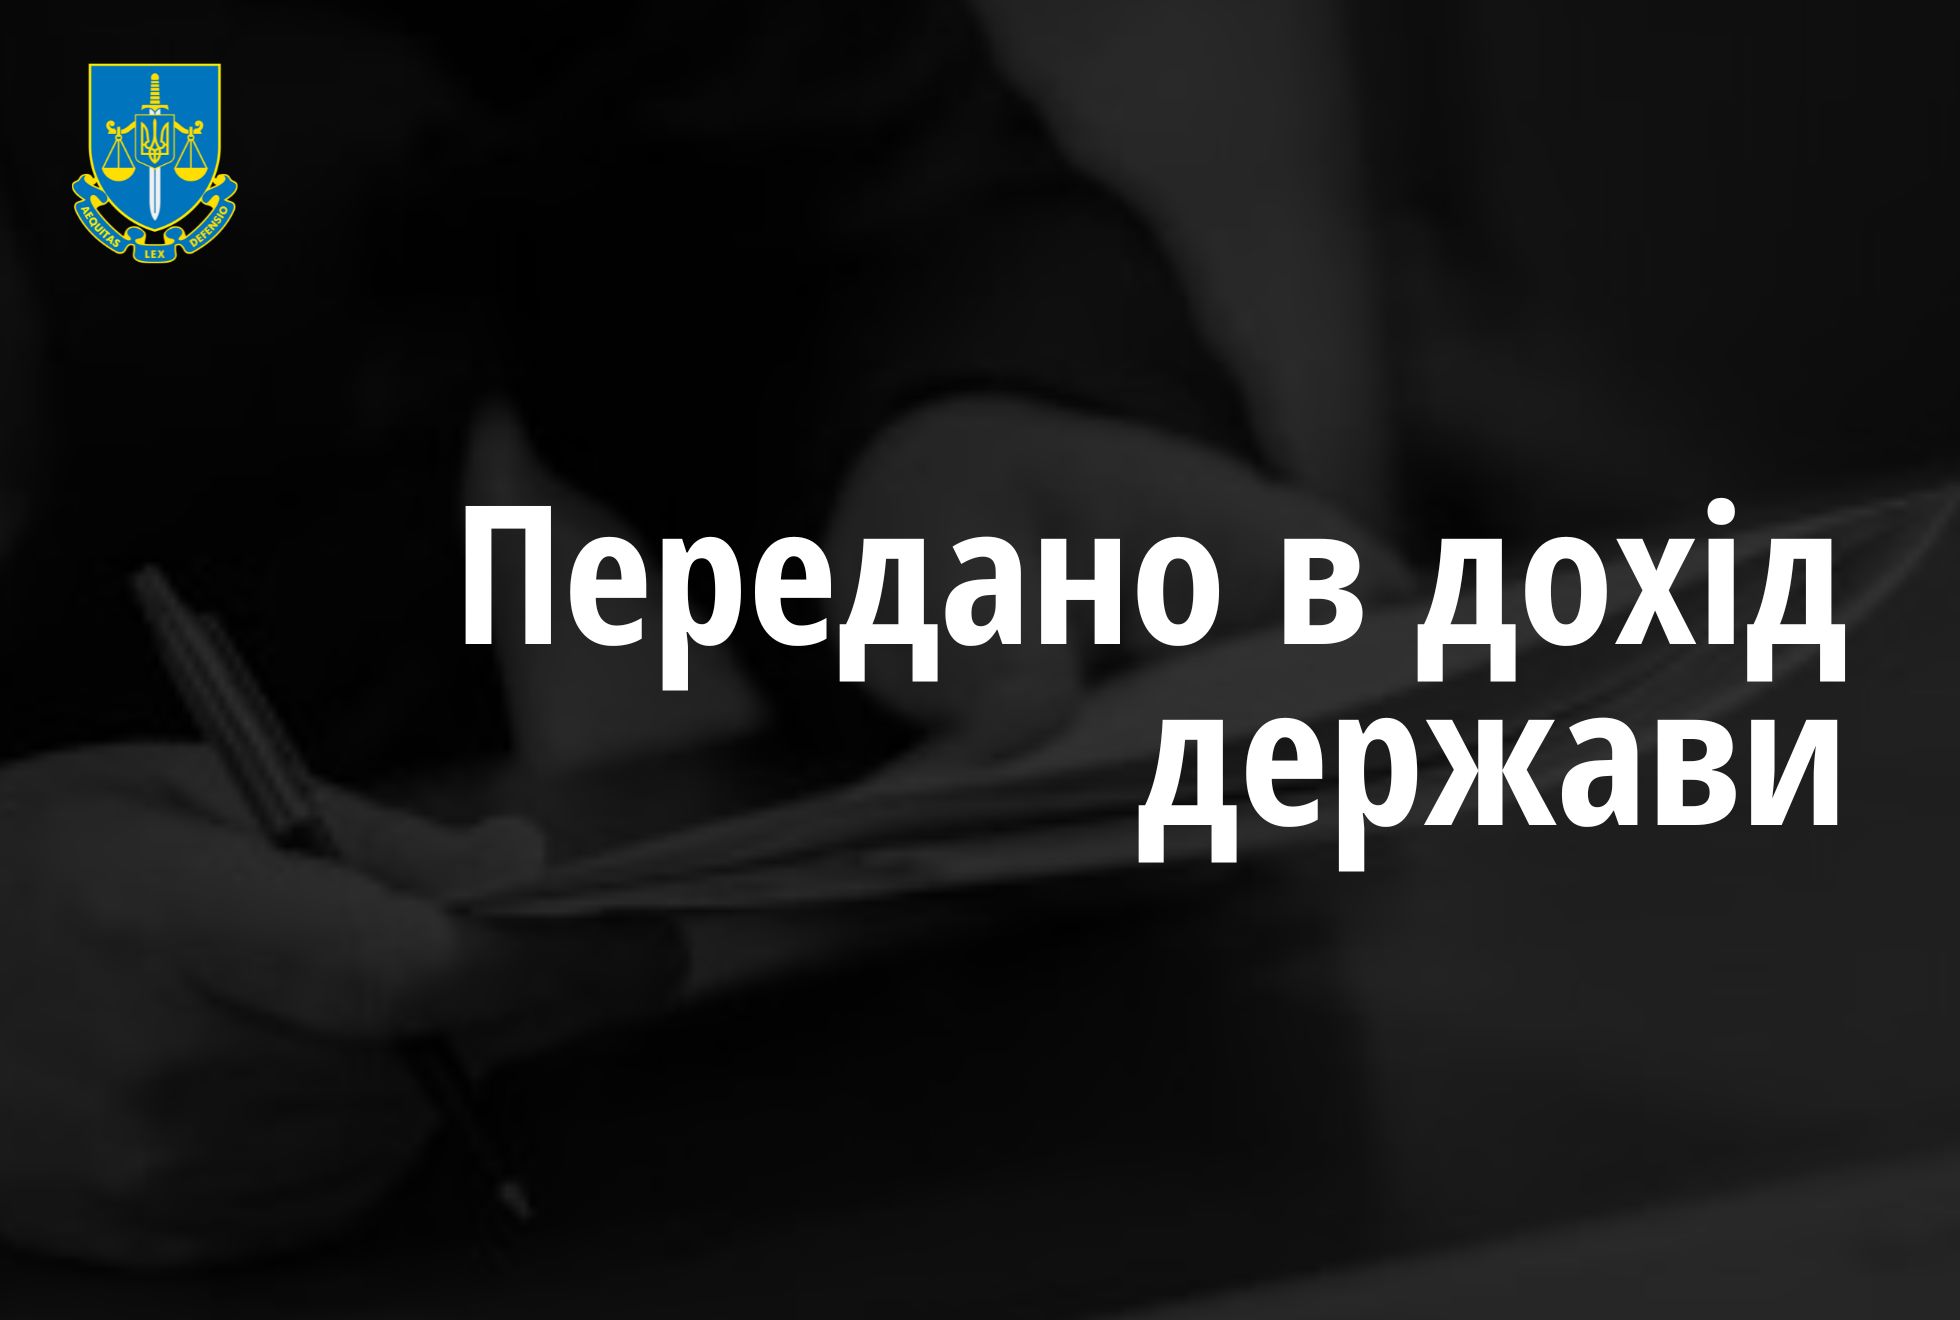 Харківські прокурори забезпечили перерахування майже 325 тис грн застави у дохід держави